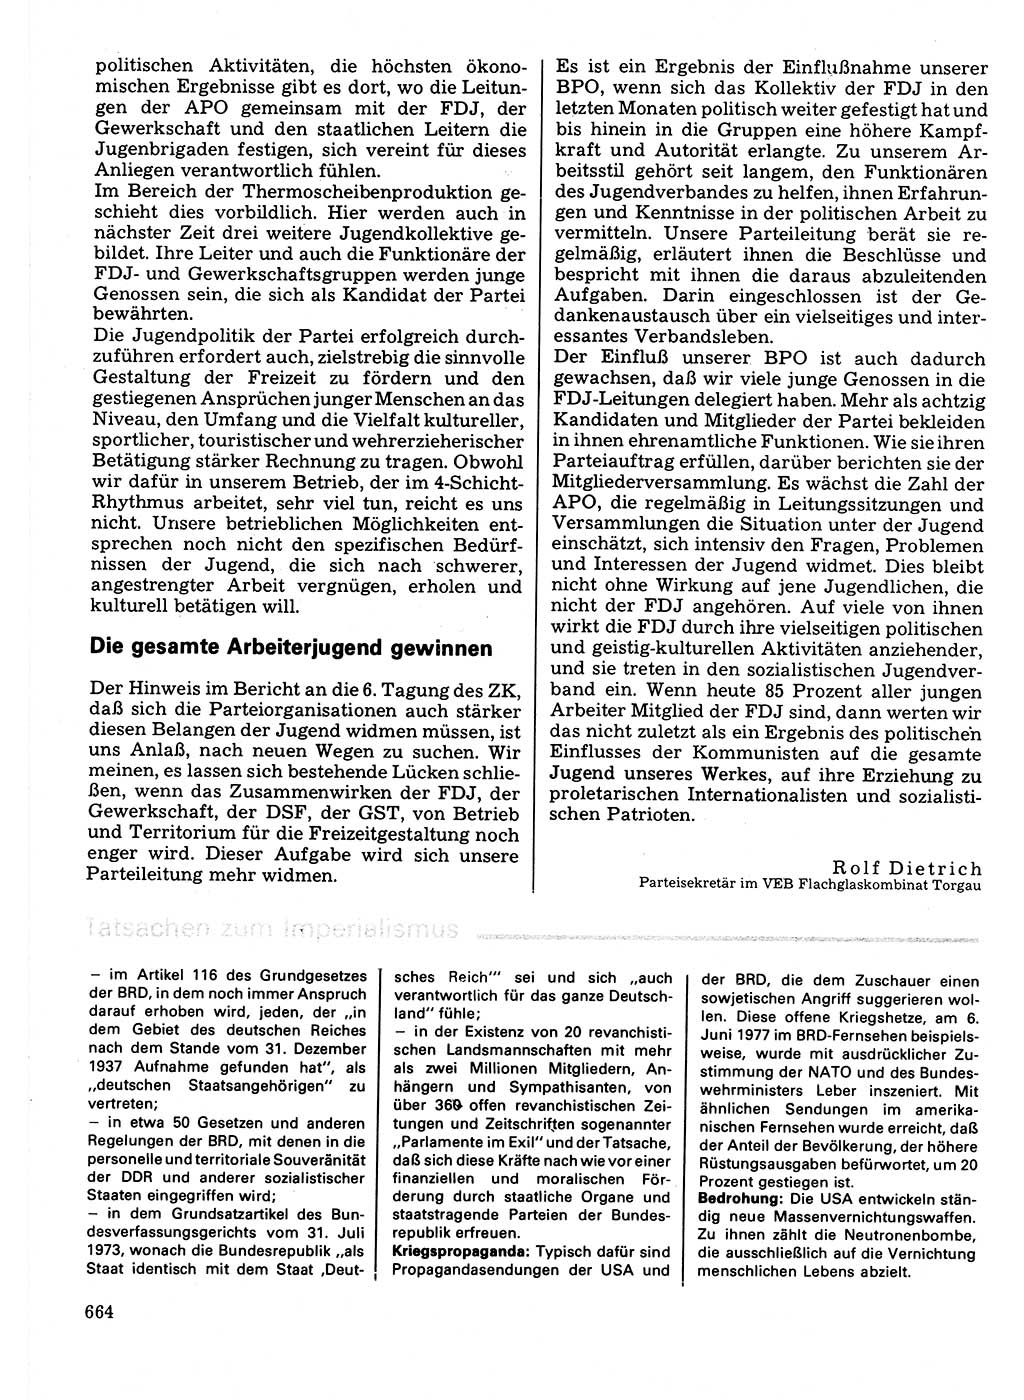 Neuer Weg (NW), Organ des Zentralkomitees (ZK) der SED (Sozialistische Einheitspartei Deutschlands) für Fragen des Parteilebens, 32. Jahrgang [Deutsche Demokratische Republik (DDR)] 1977, Seite 664 (NW ZK SED DDR 1977, S. 664)